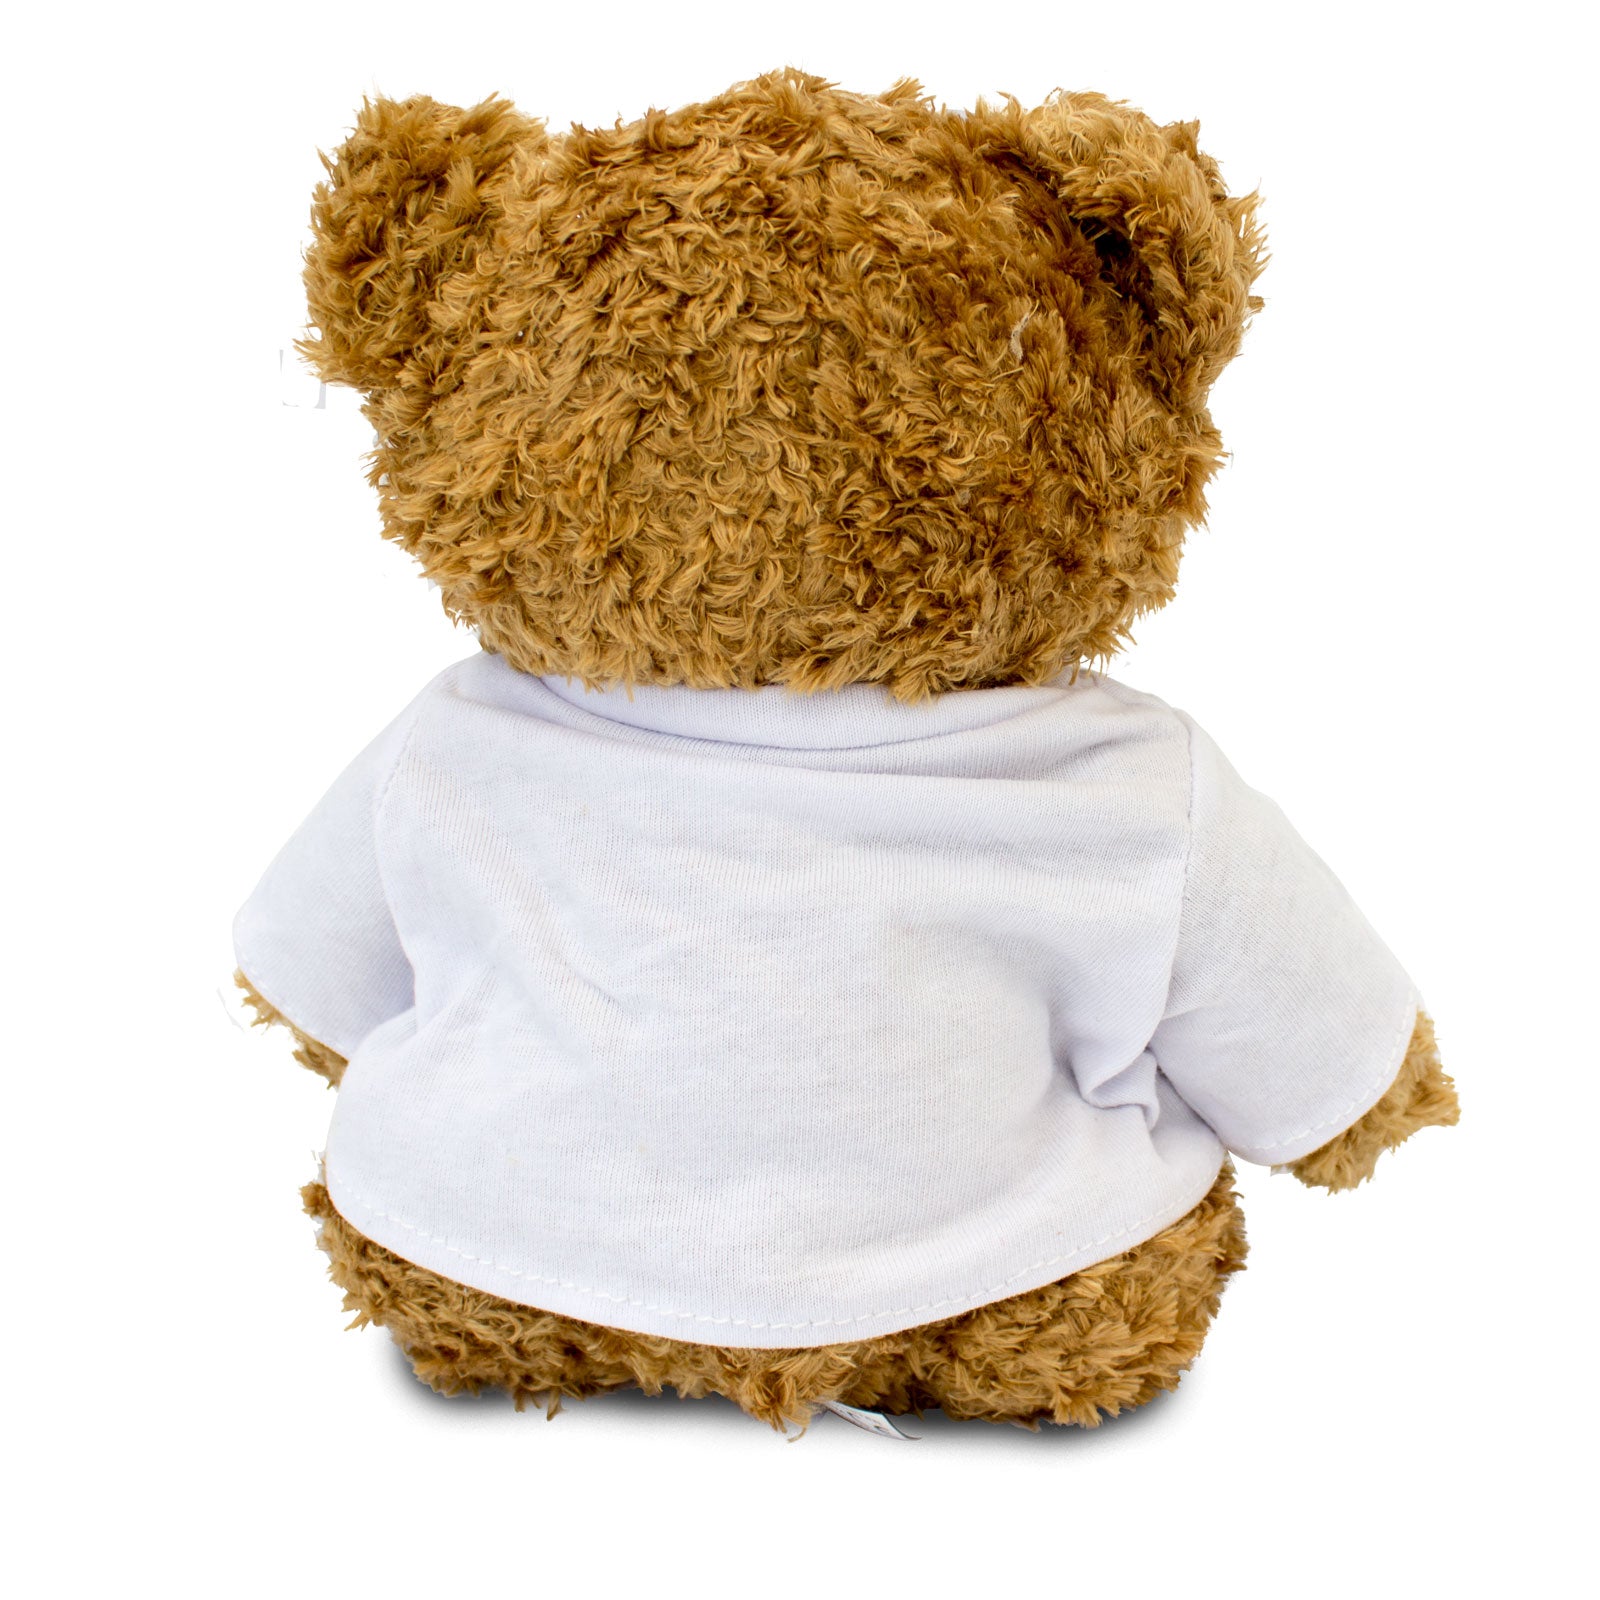 Get Well Soon Billy - Teddy Bear